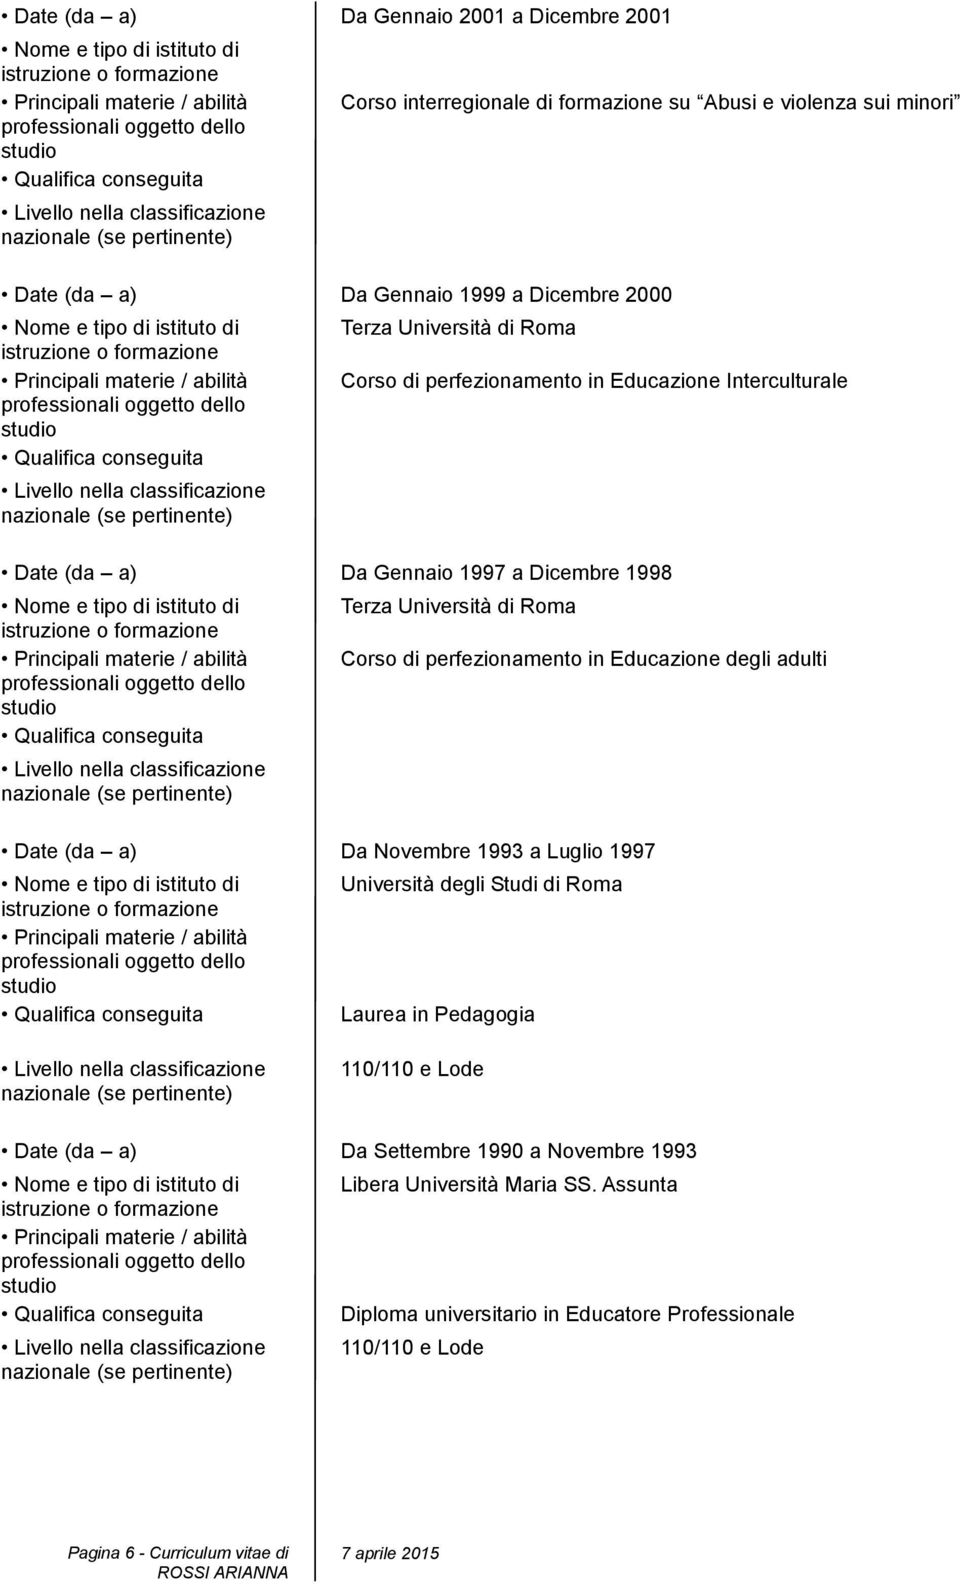 perfezionamento in Educazione degli adulti Date (da a) Da Novembre 1993 a Luglio 1997 Università degli Studi di Roma Laurea in Pedagogia 110/110 e Lode Date